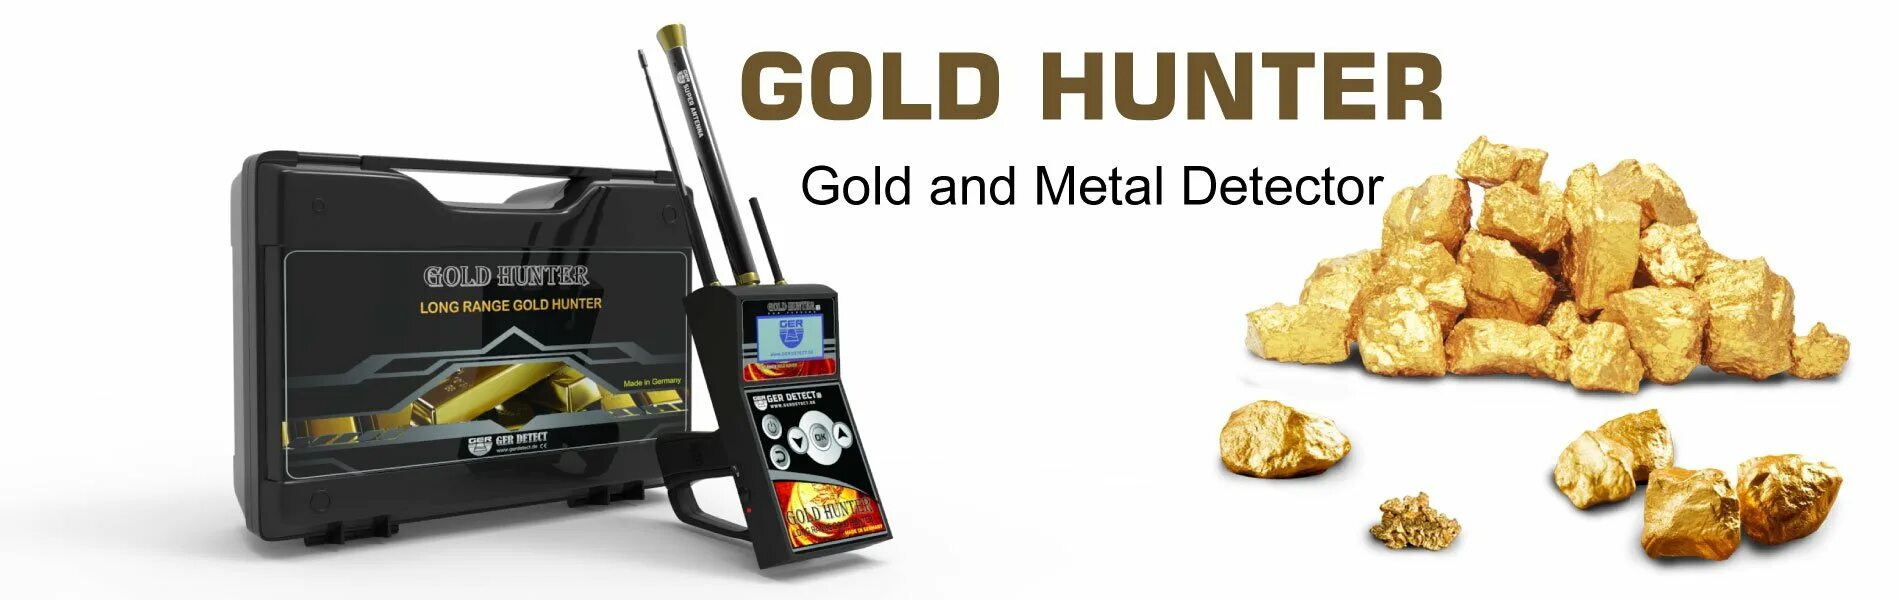 Long Ranger Gold металлоискатель. Gold Hunter b75. GH-20 металлоискатель Gold Hunter. Ger detect Gold Hunter комплектация.